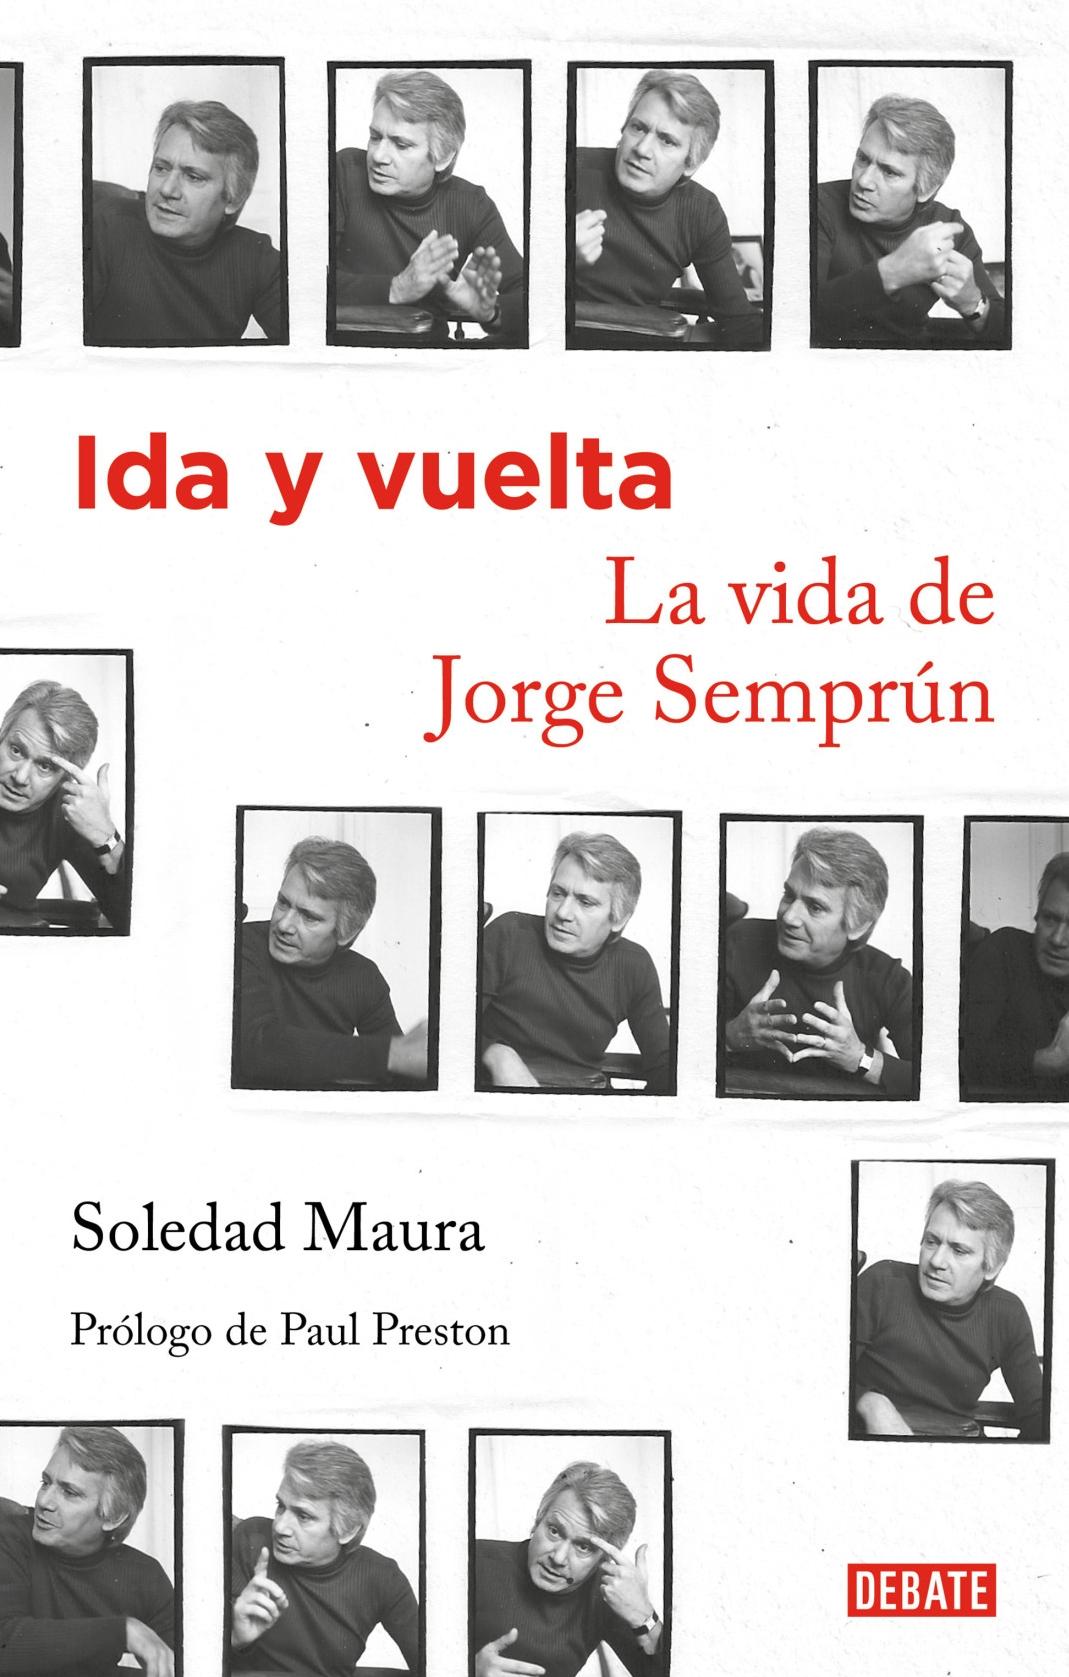 Ida y Vuelta "La Vida de Jorge Semprún". 